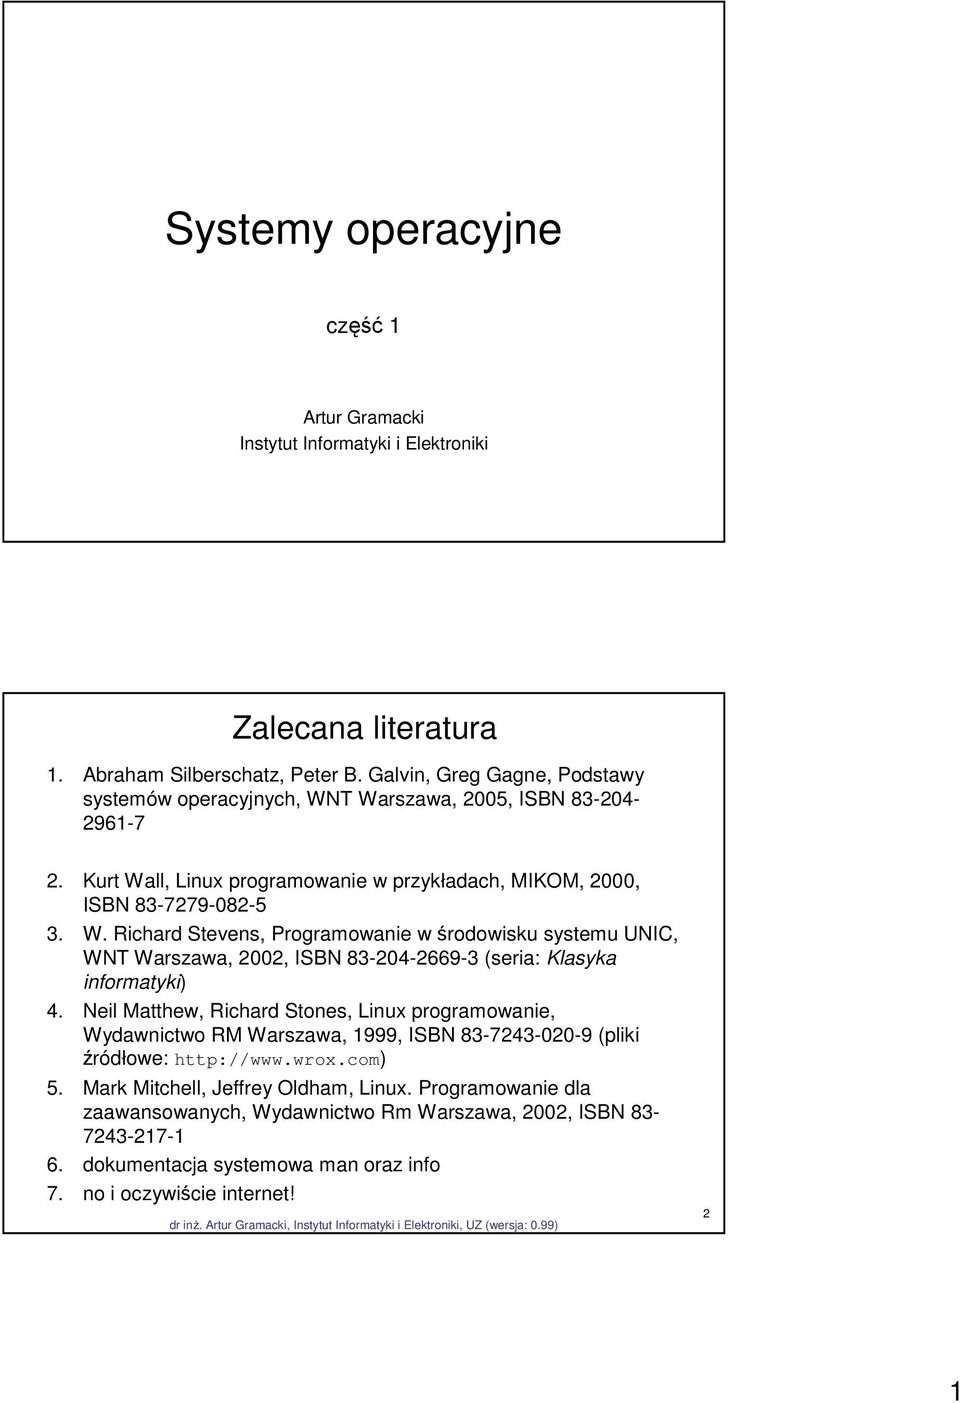 Neil Matthew, Richard Stones, Linux programowanie, Wydawnictwo RM Warszawa, 1999, ISBN 83-7243-020-9 (pliki źródłowe: http://www.wrox.com) 5. Mark Mitchell, Jeffrey Oldham, Linux.